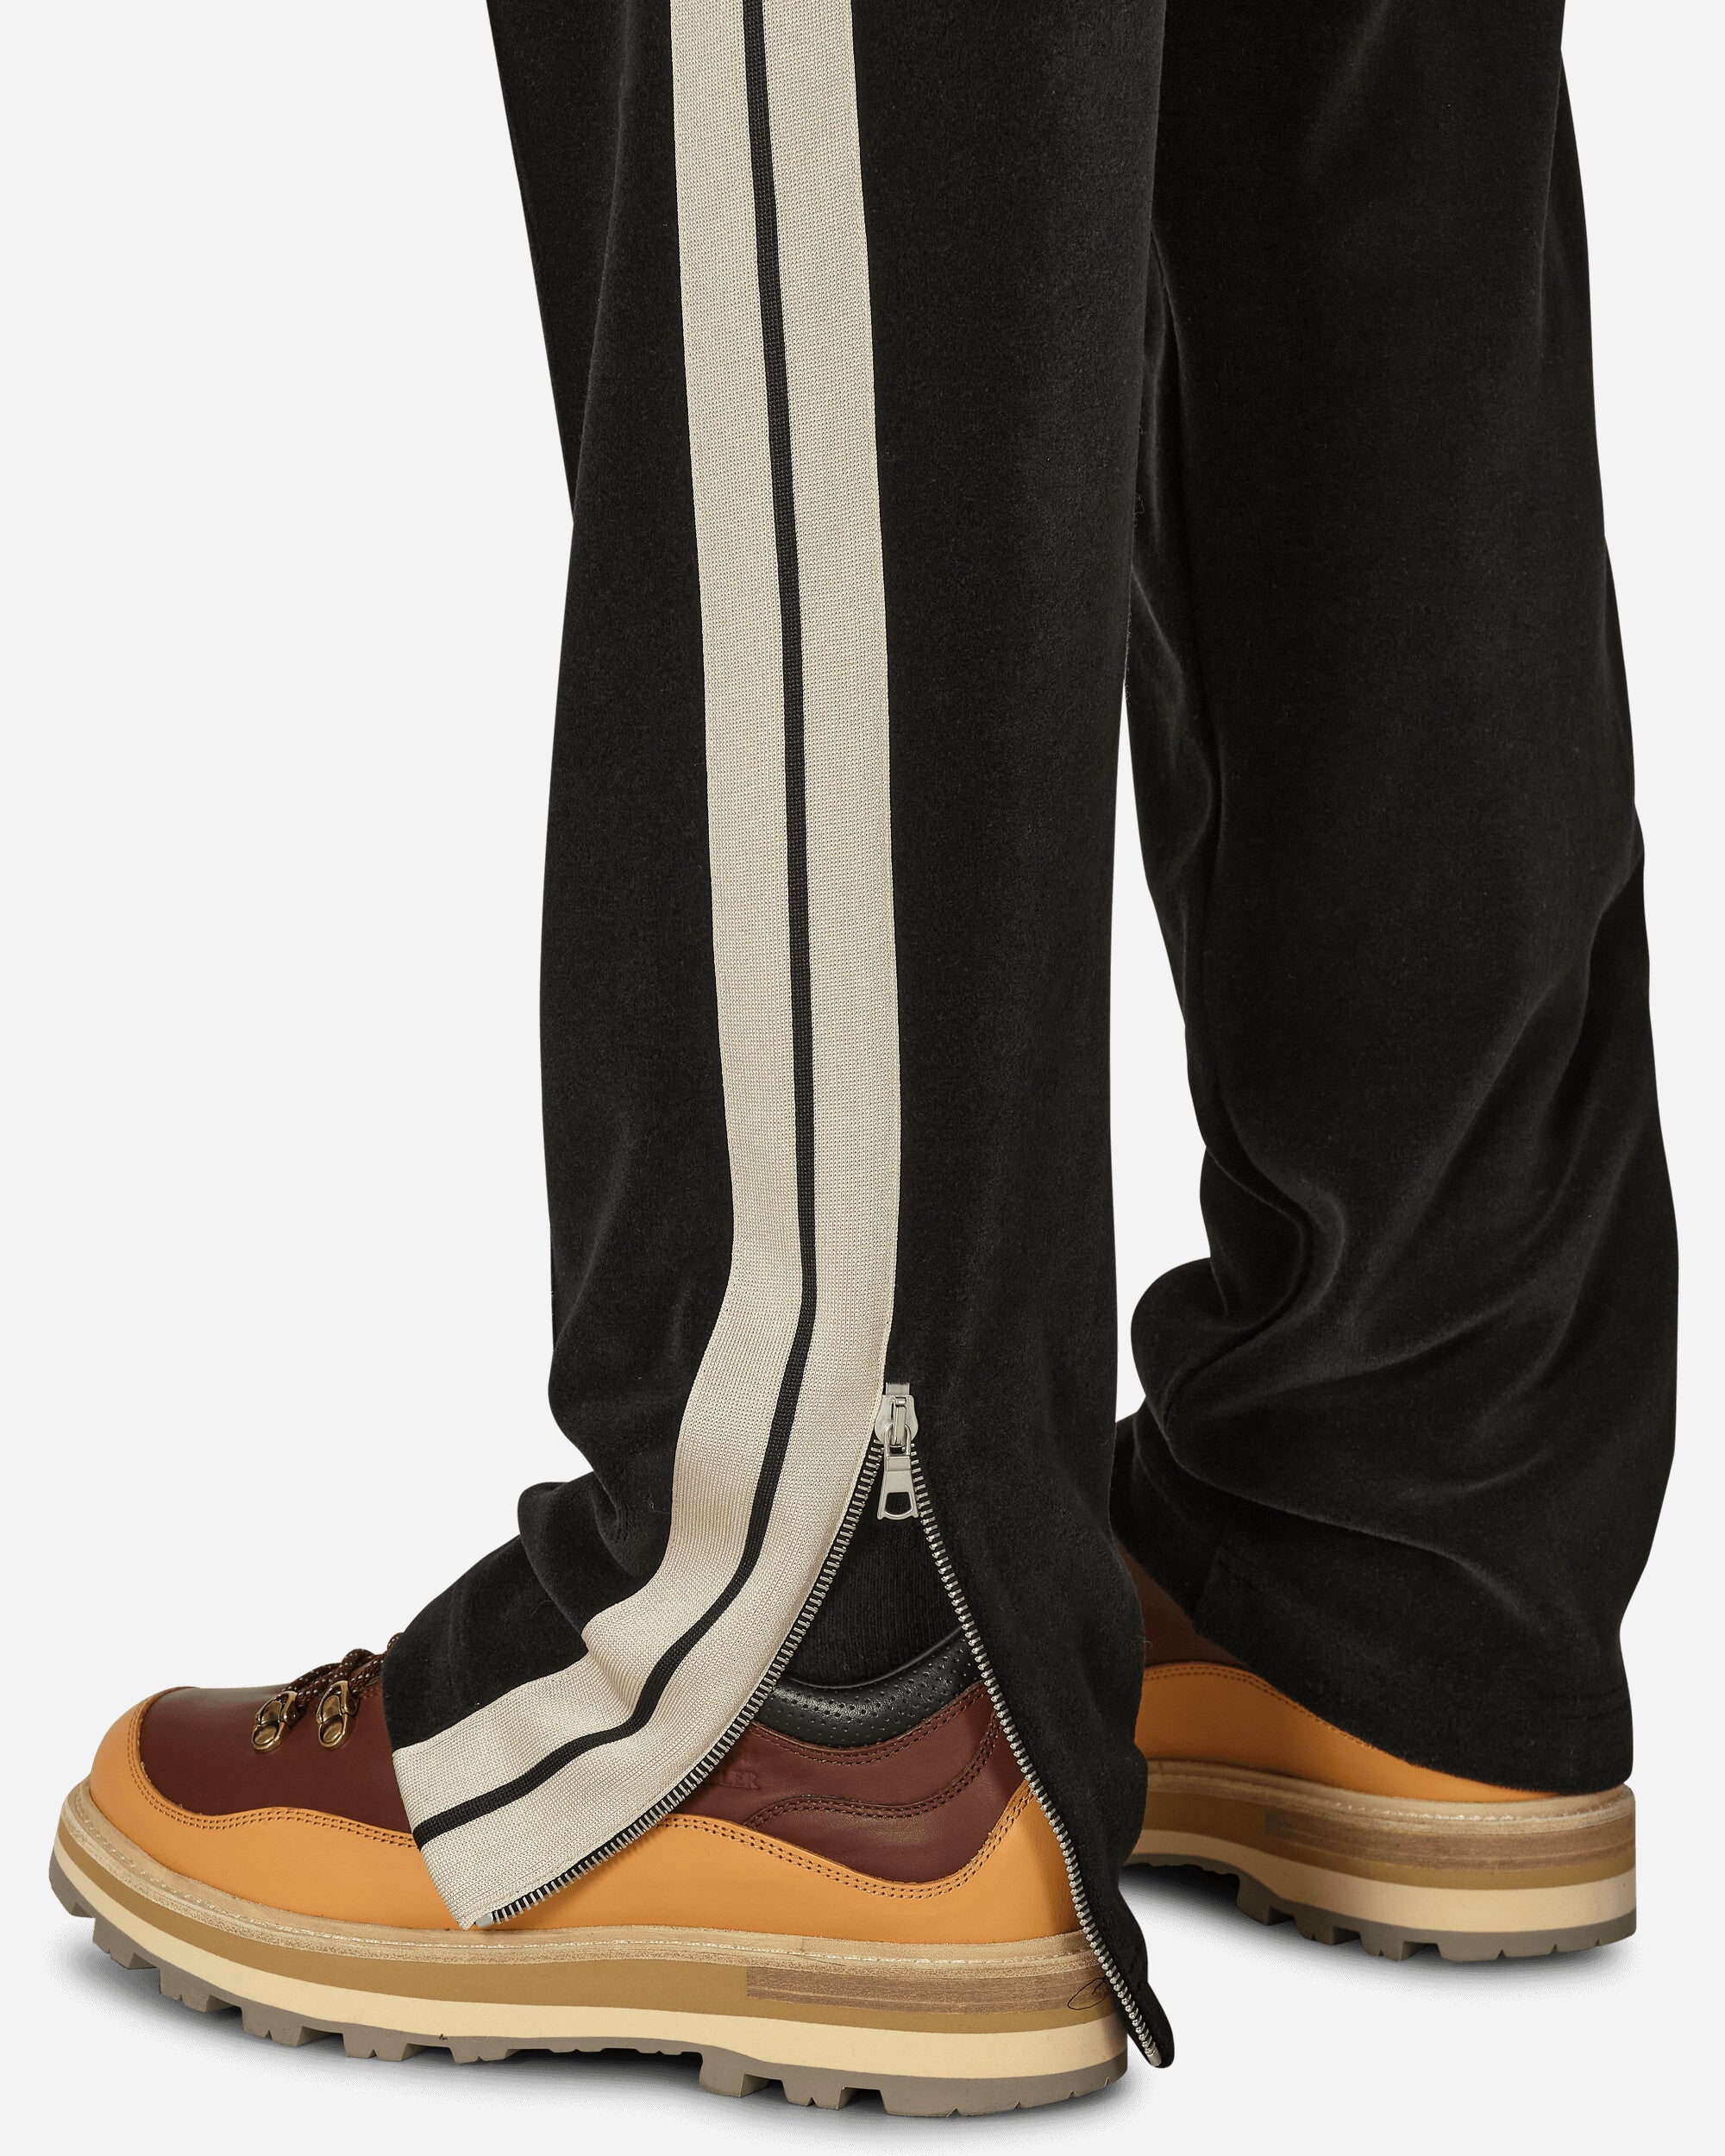 Moncler Genius Jersey Pant X Palm Angels Black Pants Sweatpants 8H0000189A6S 999